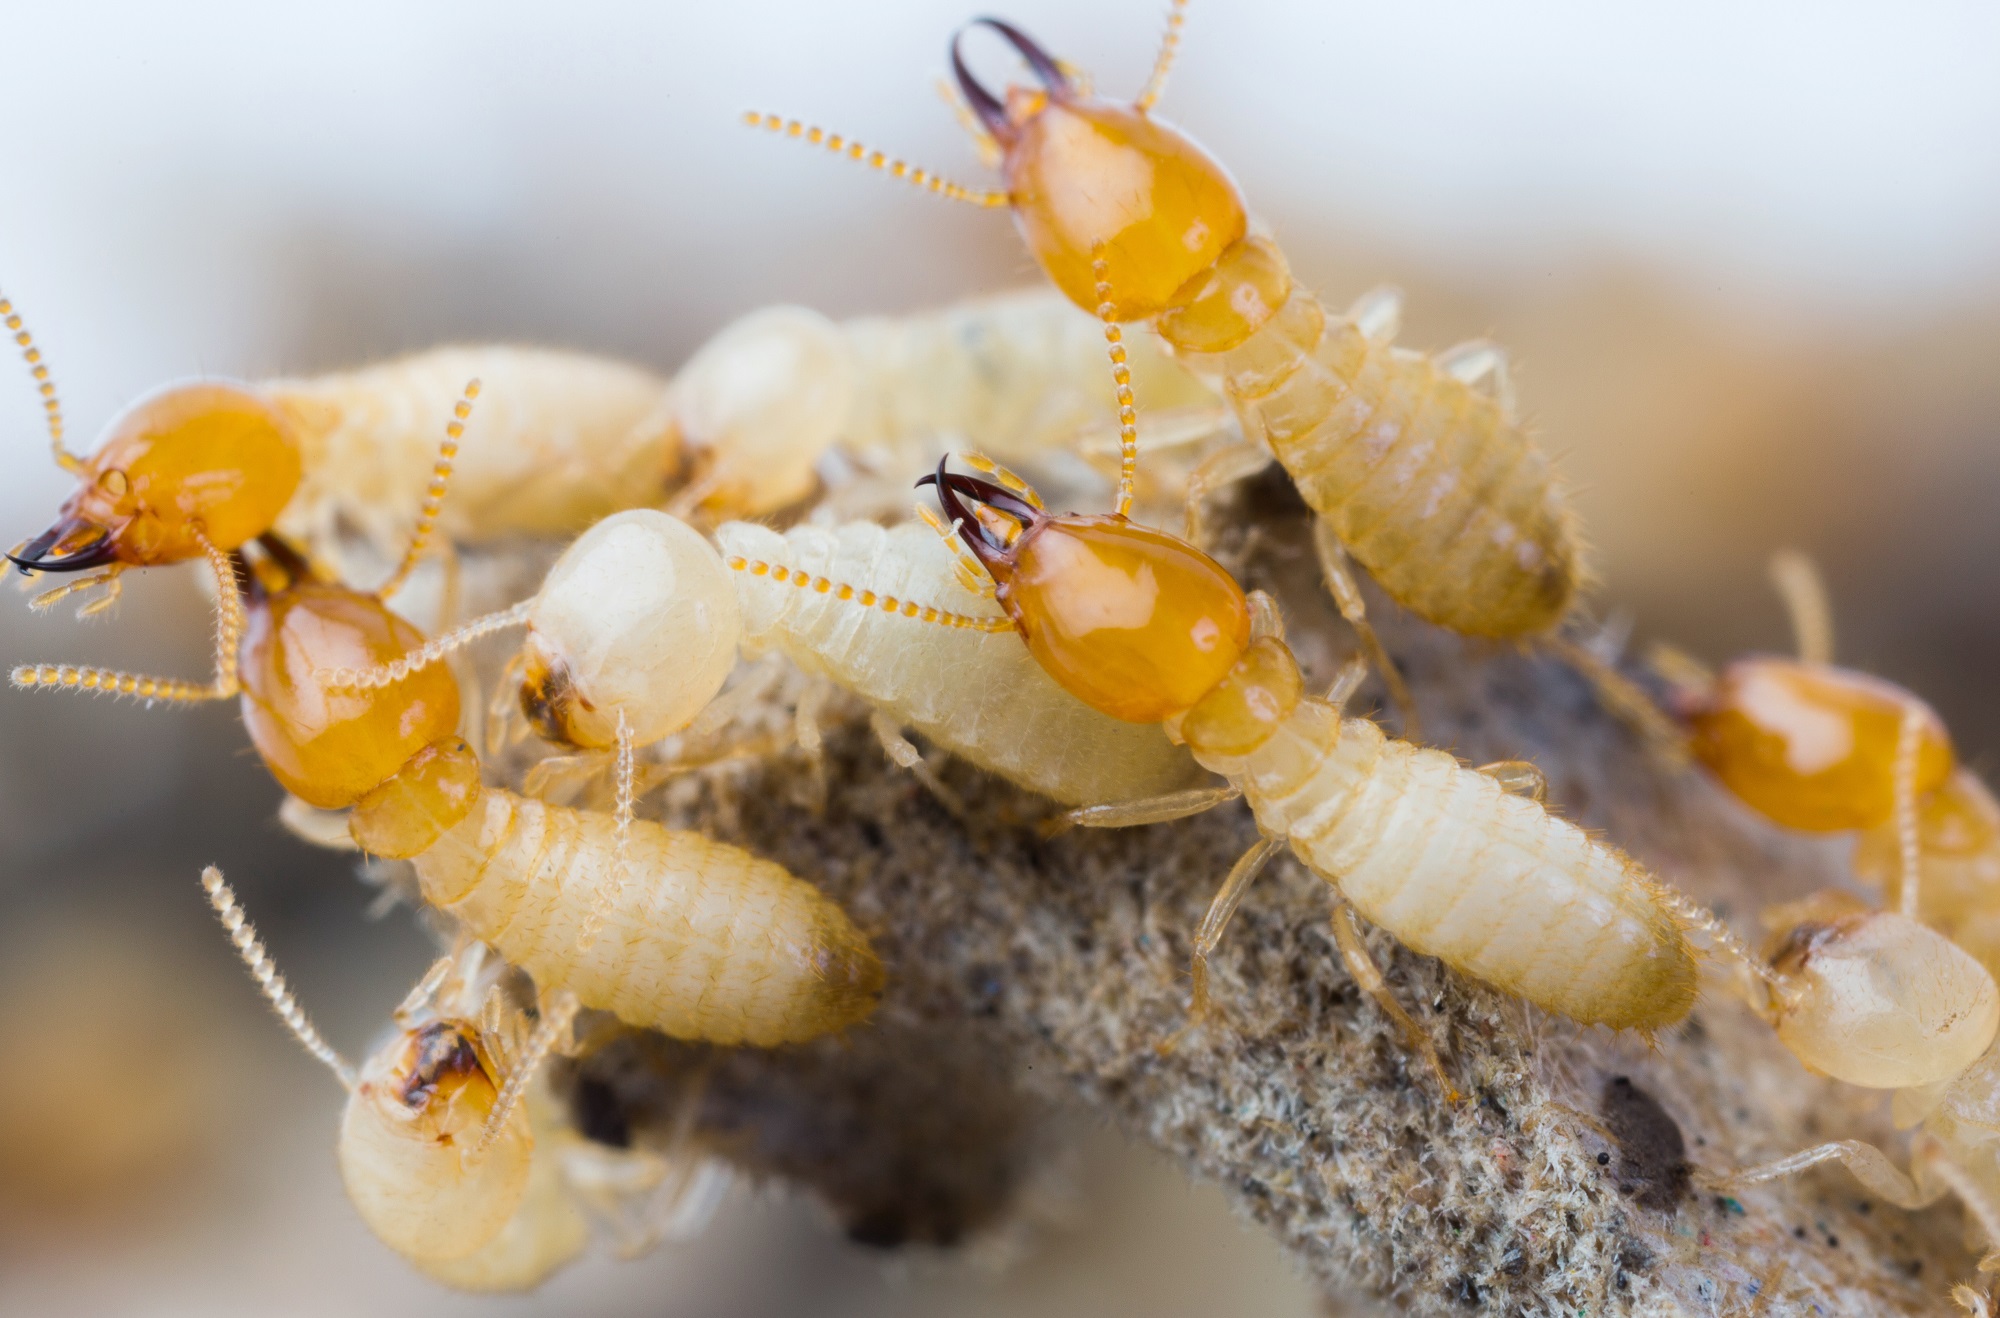 Termites in Thailand